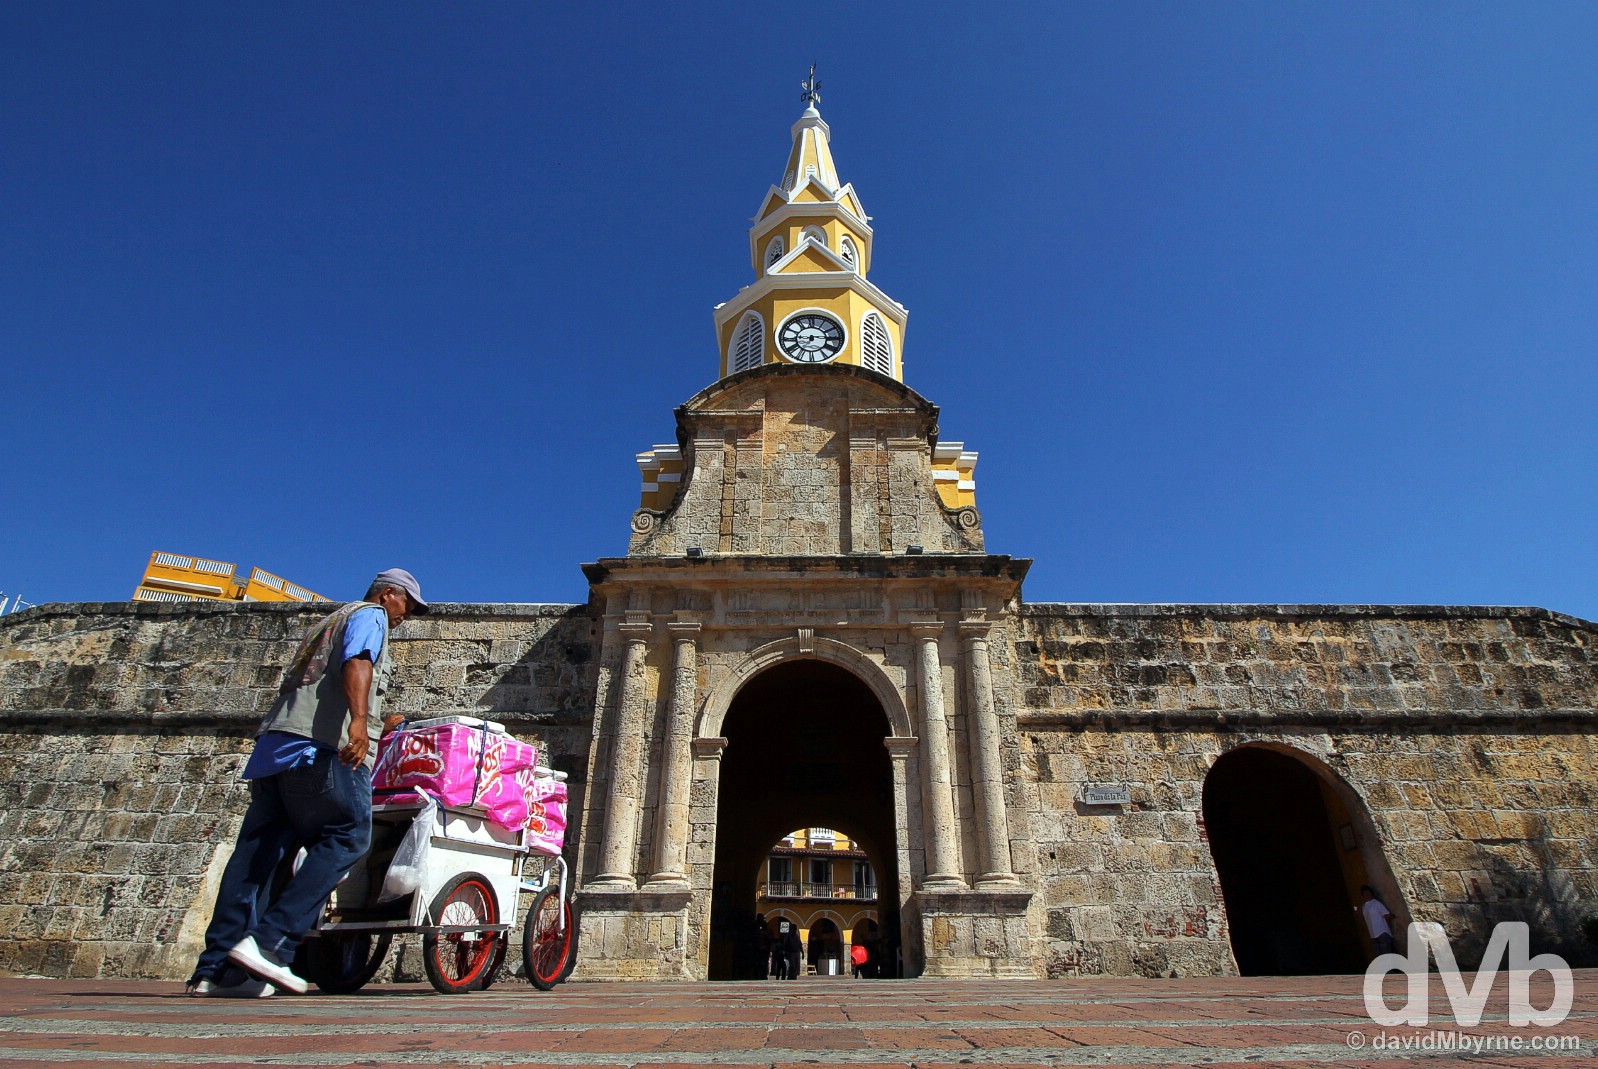 Puerta del Reloj in Old Town Cartagena, Colombia. June 25, 2015.